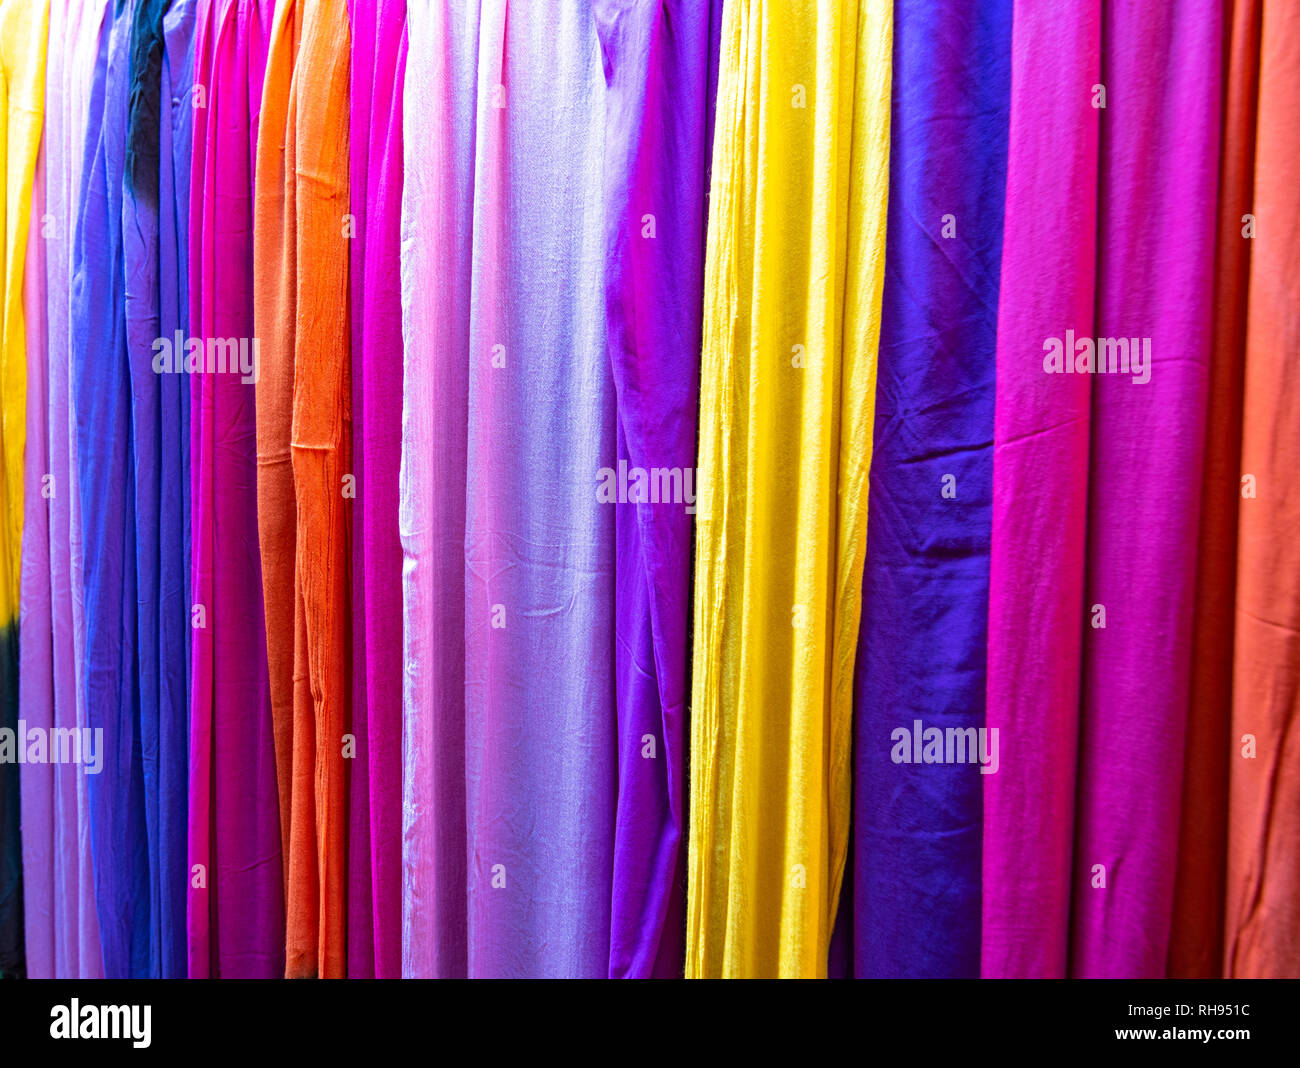 Foulards traditionnels marocains colorés et des châles à Fes, Maroc également connu sous le nom de touareg shesh (turban). Des tissus faits à la main. Fez Souk marché foulards. Banque D'Images